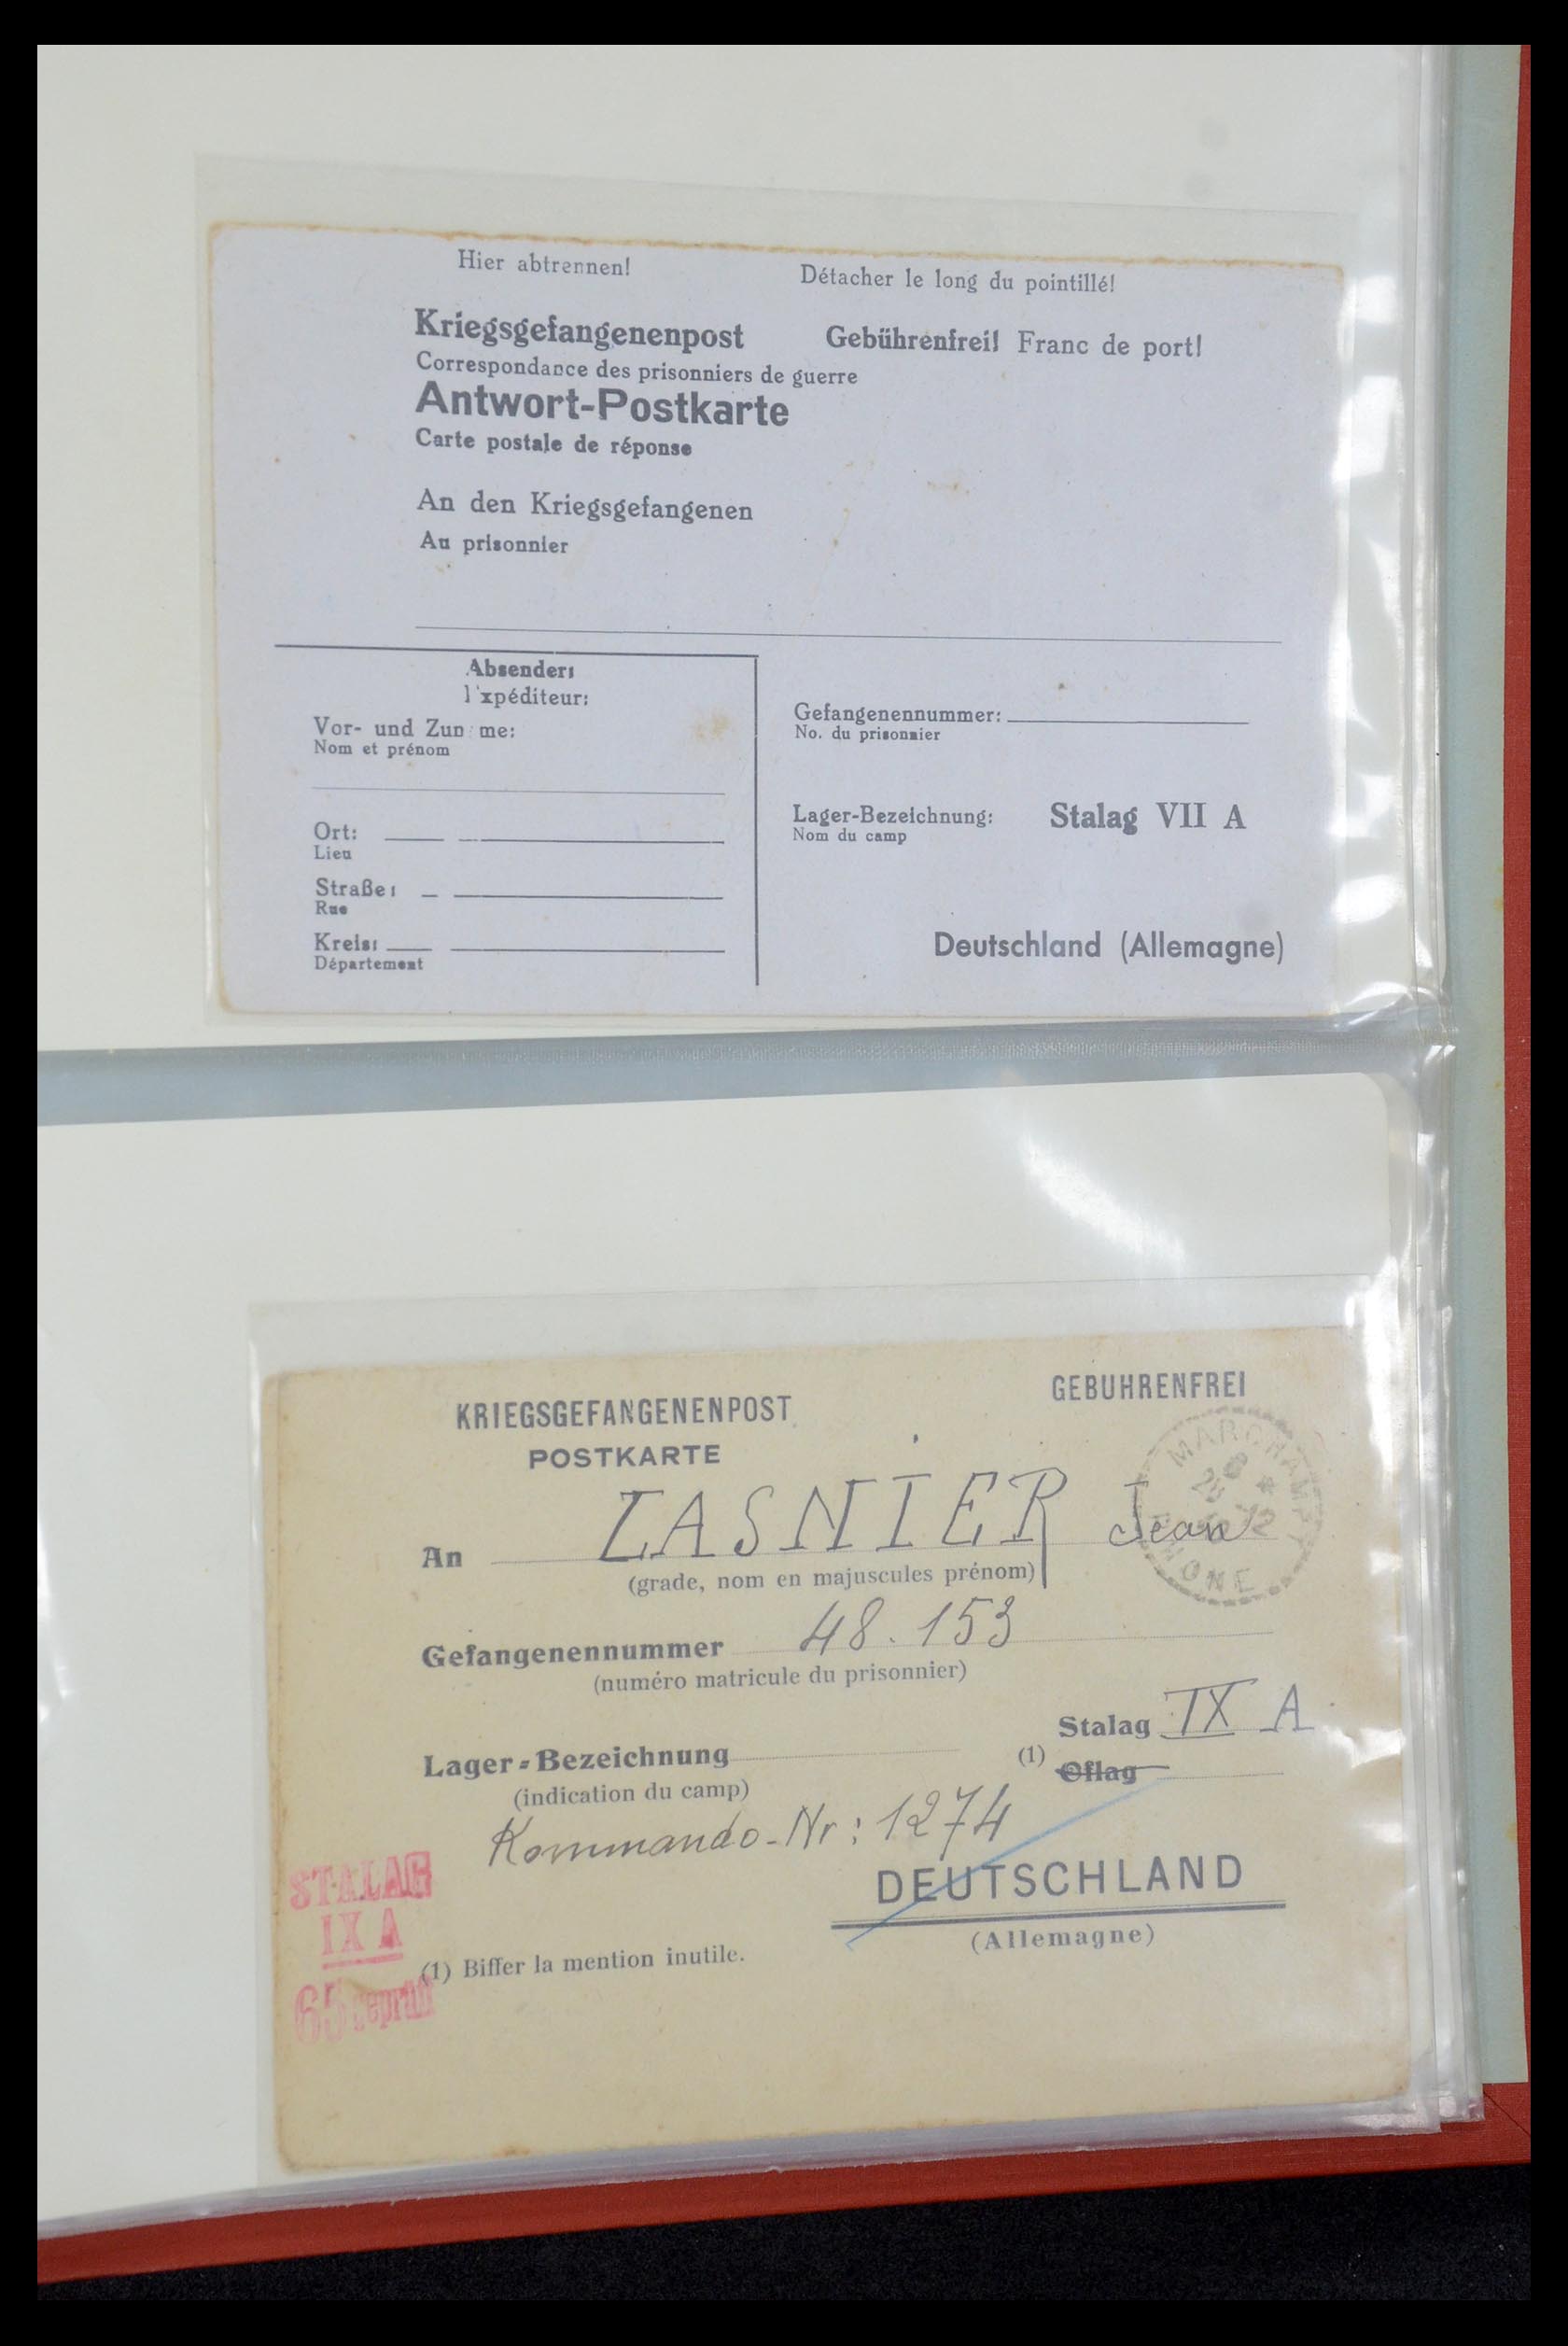 35599 035 - Stamp Collection 35599 Germany prisoner of war cards 1940-1944.